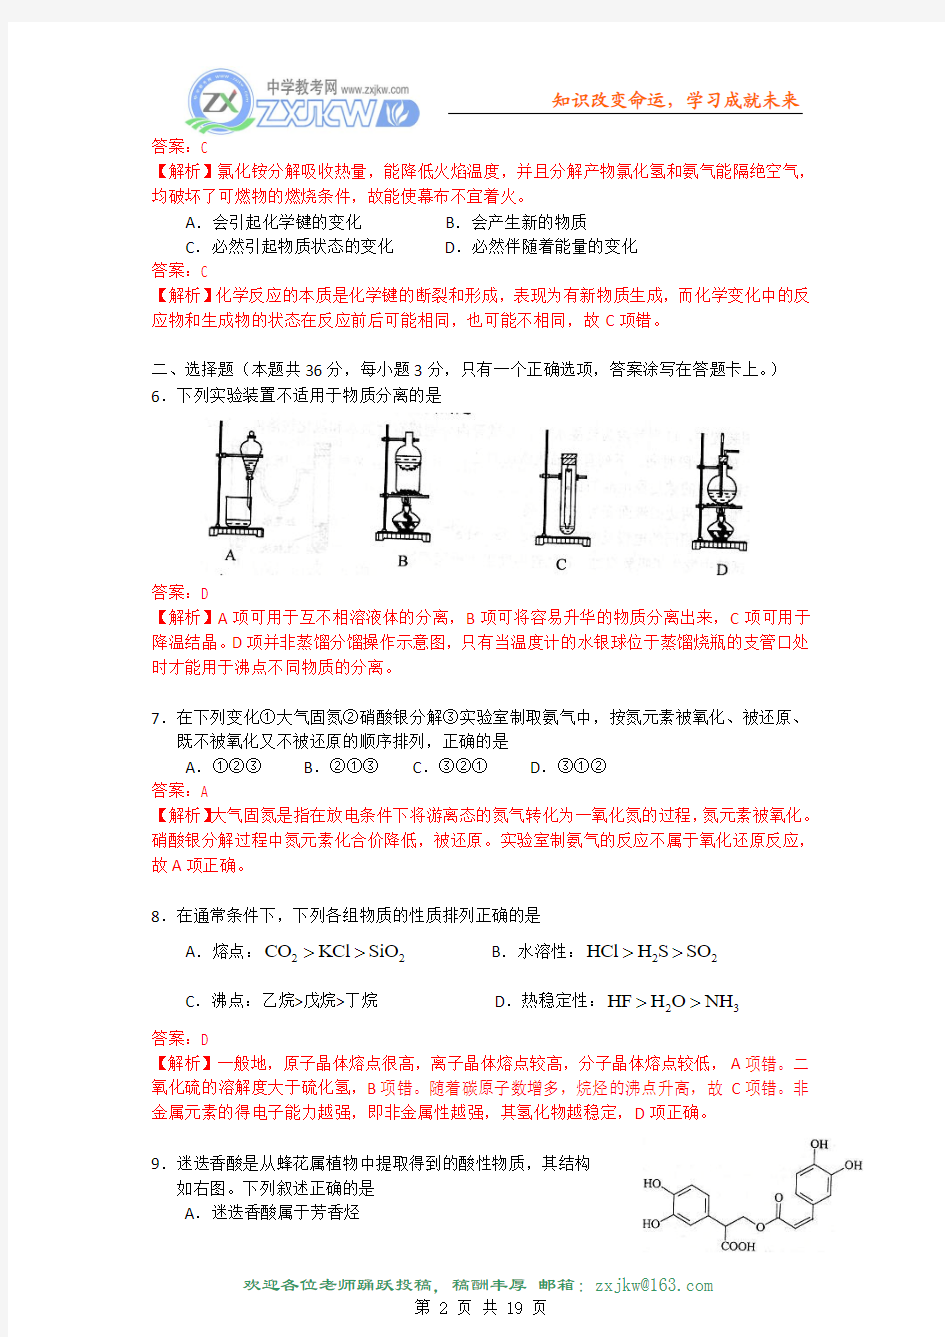 【化学】2009年普通高等学校招生全国统一考试(上海卷)解析版